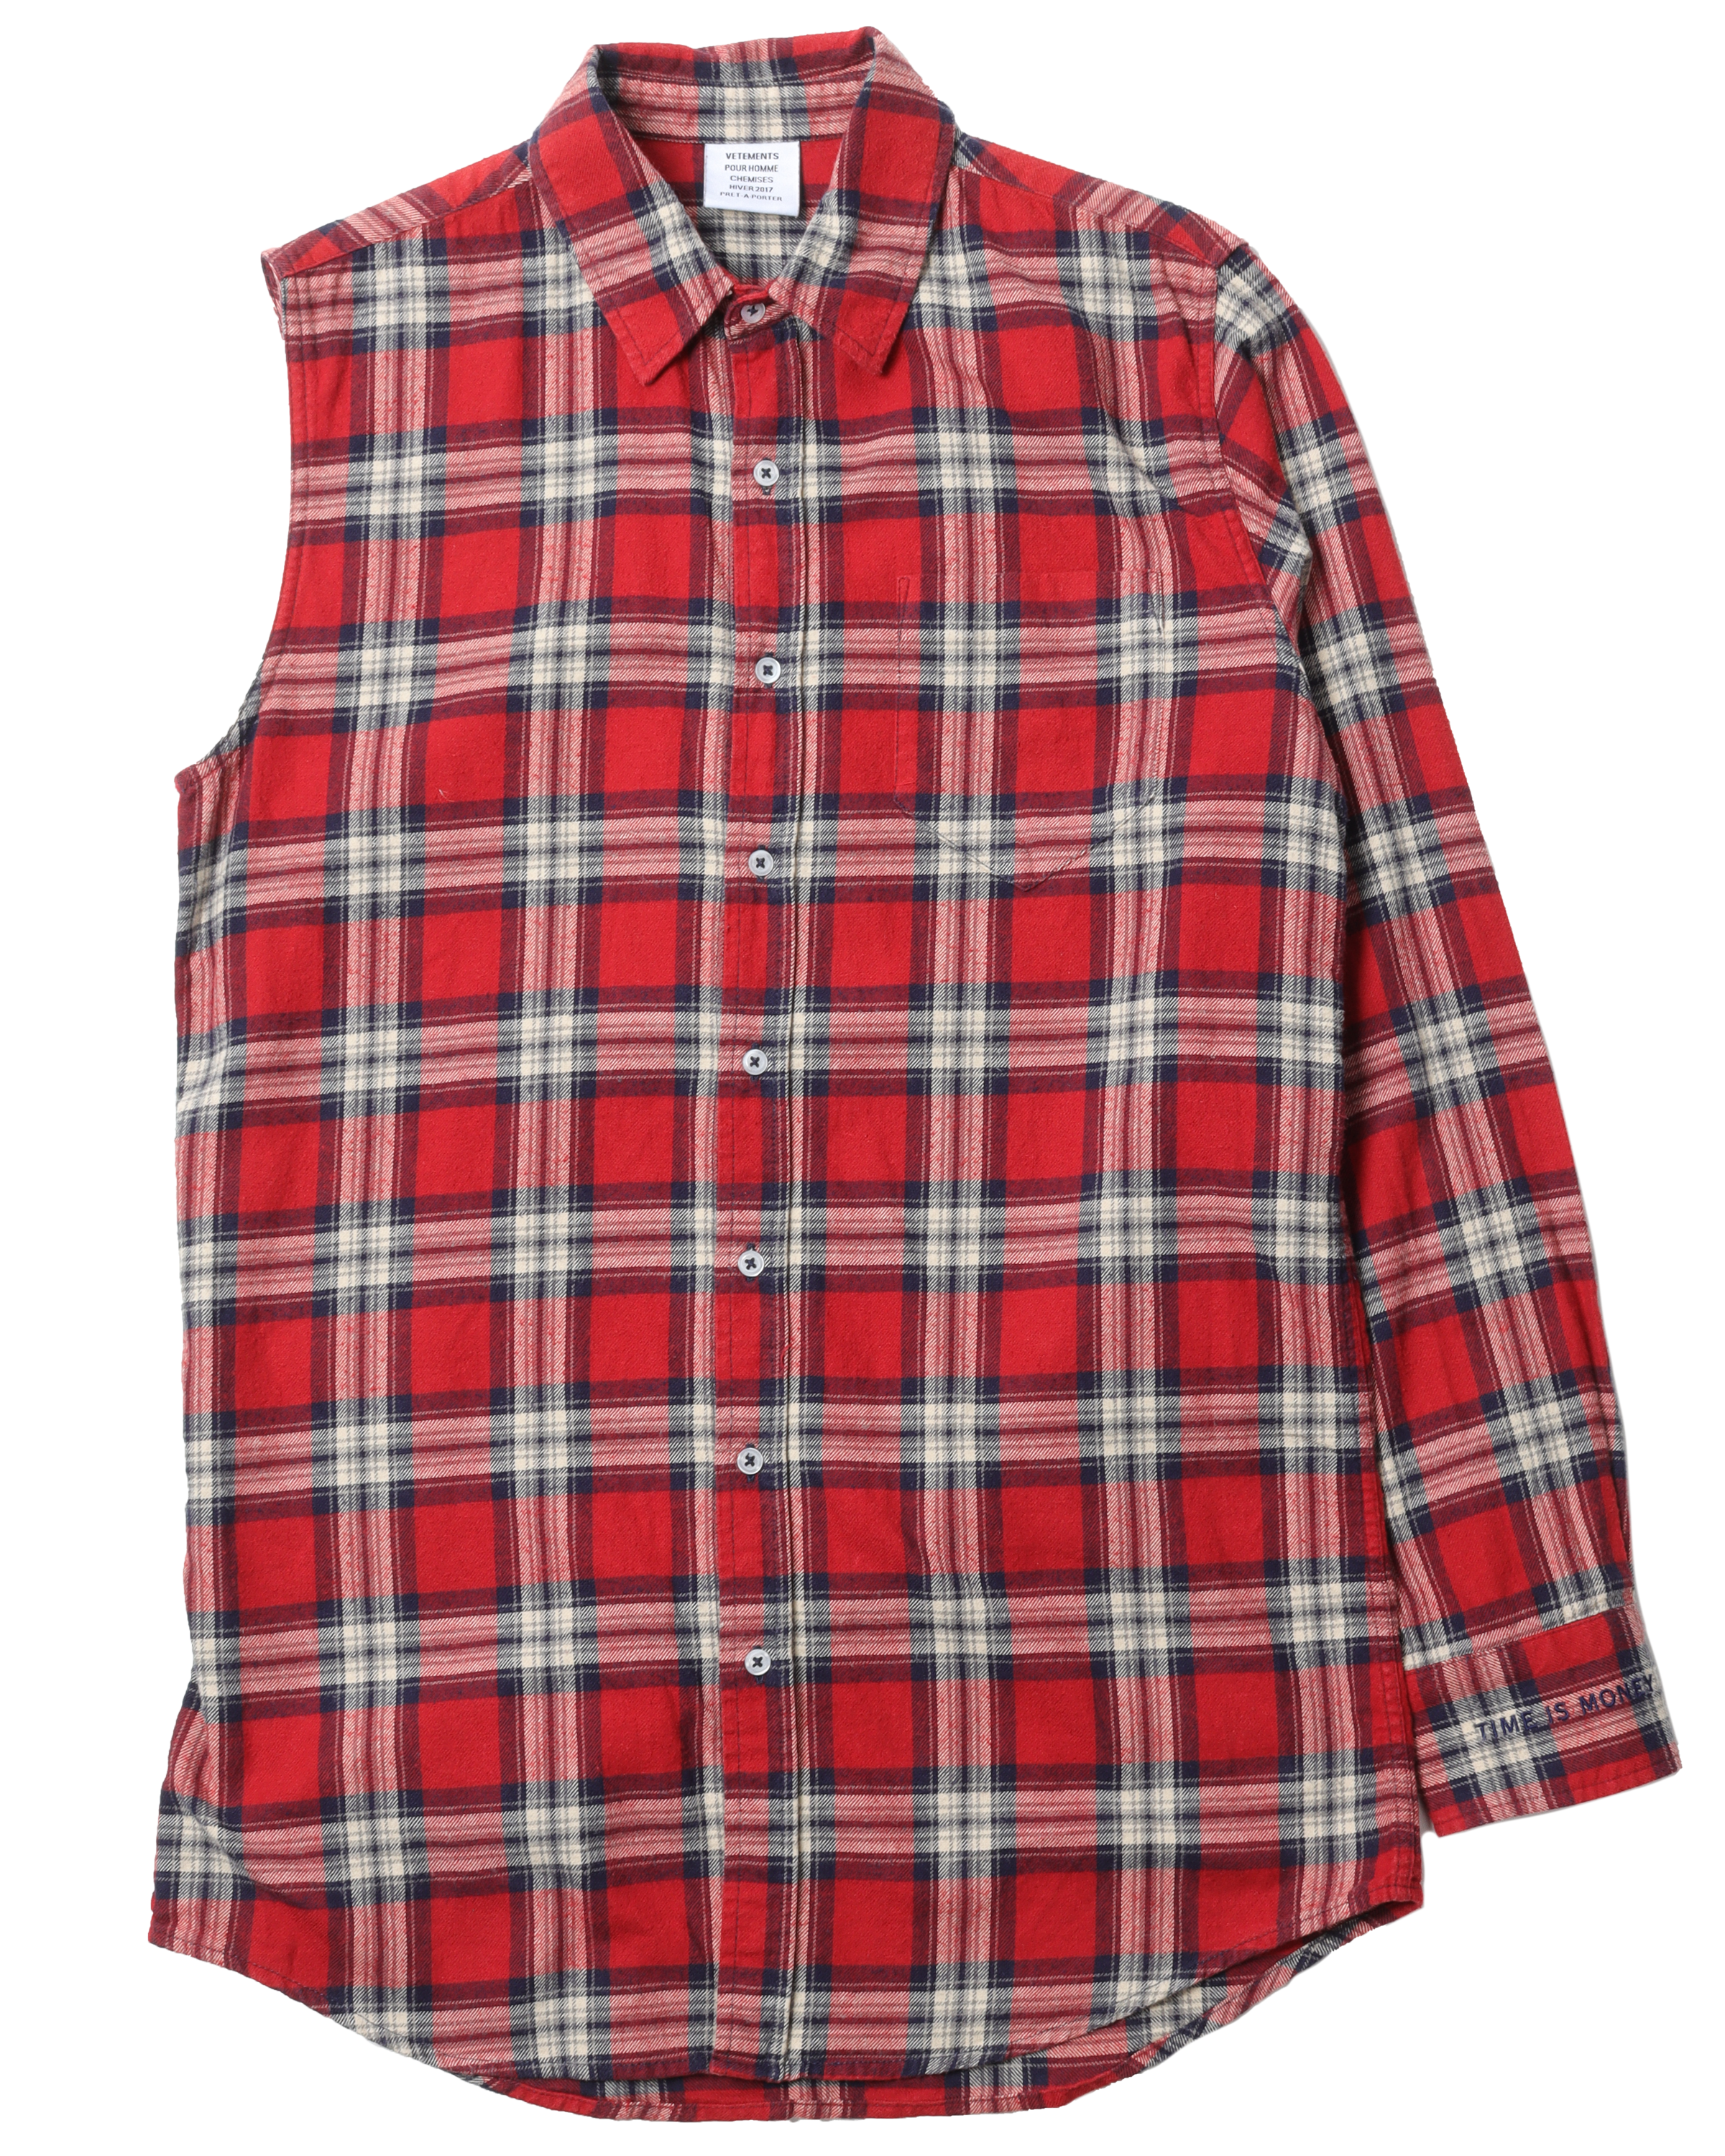 FW17 Asymmetrical Flannel Shirt